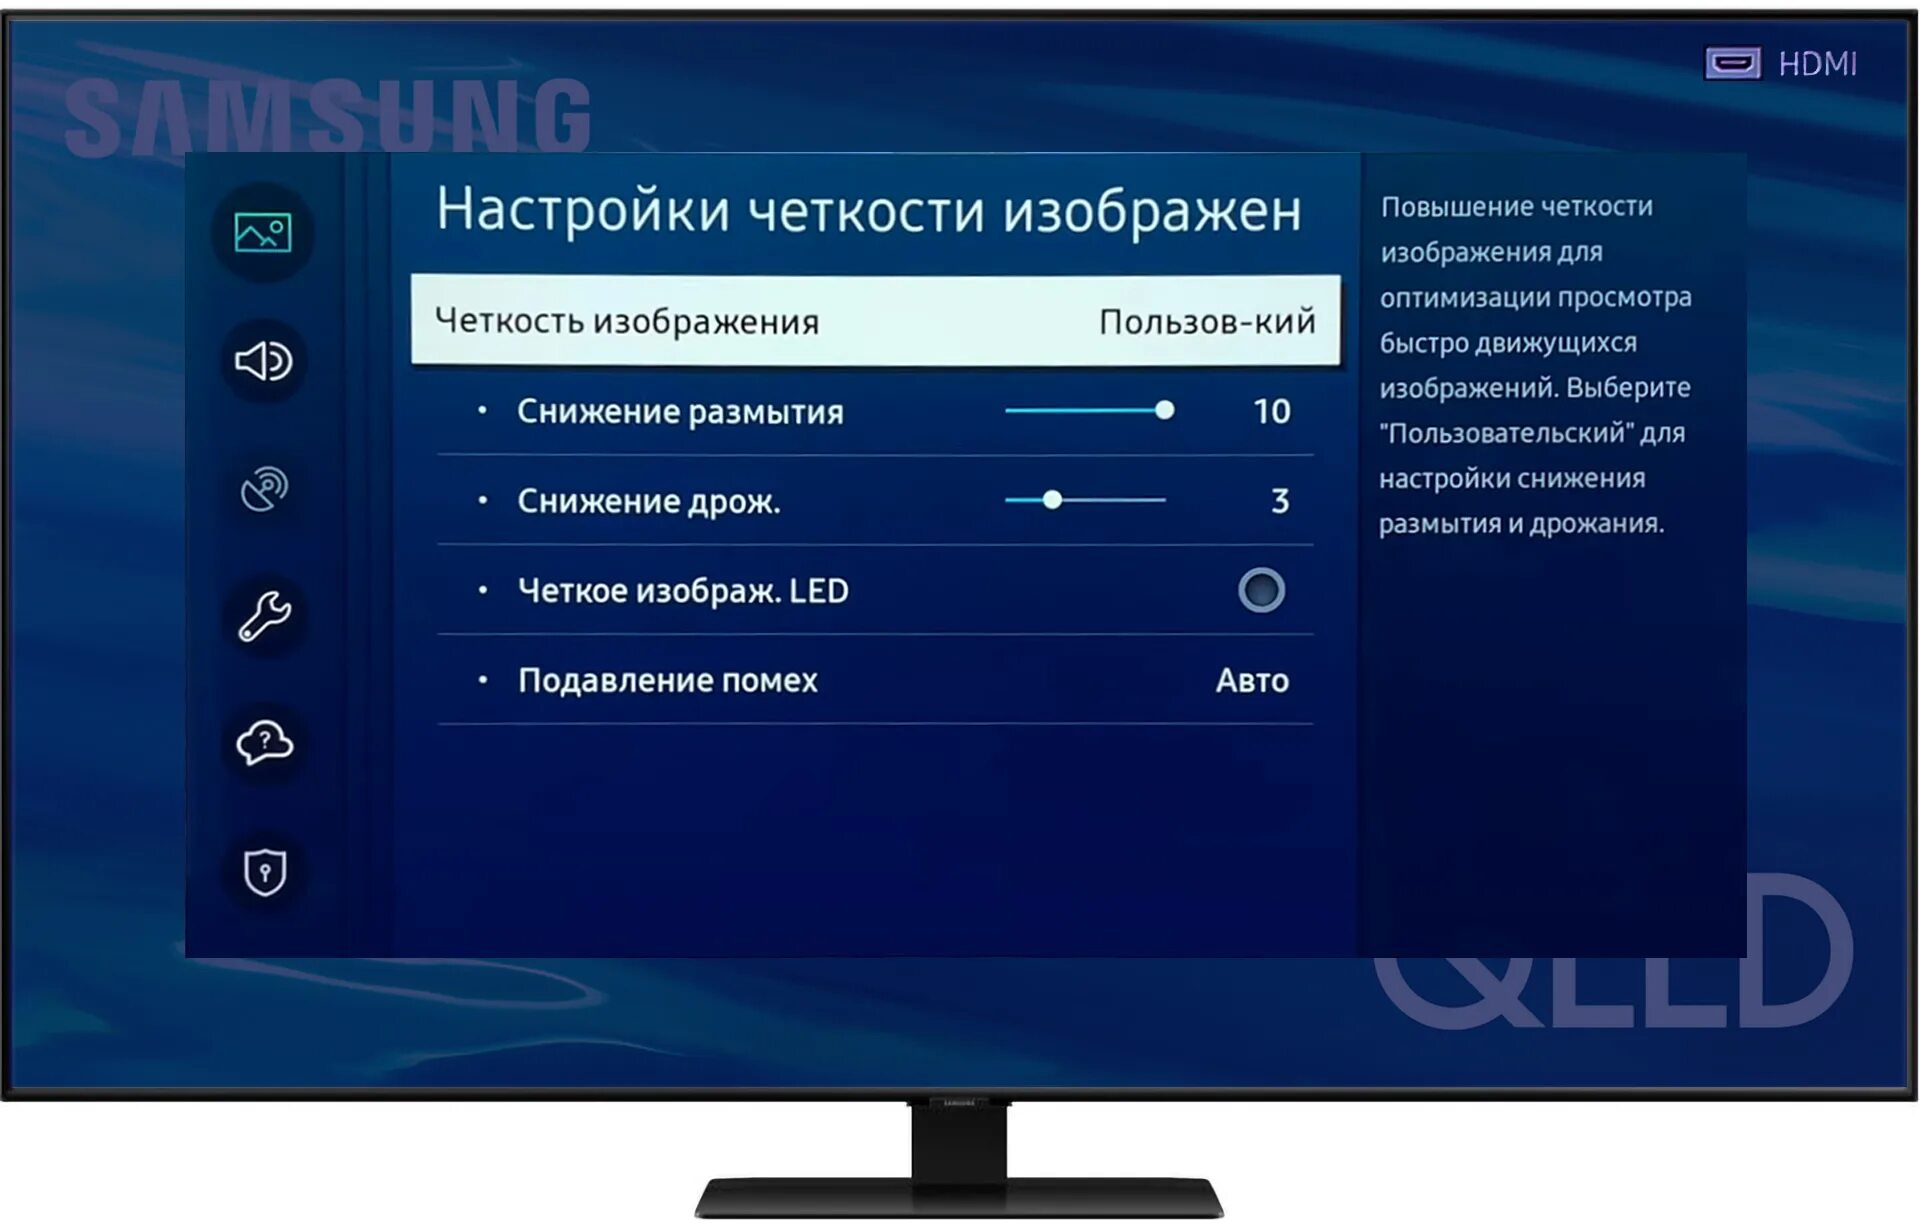 Телевизор самсунг параметры. Параметры изображения телевизора. Настройки изображения телевизора Samsung. Экран настройки телевизора. Настройка изображения телевизора.